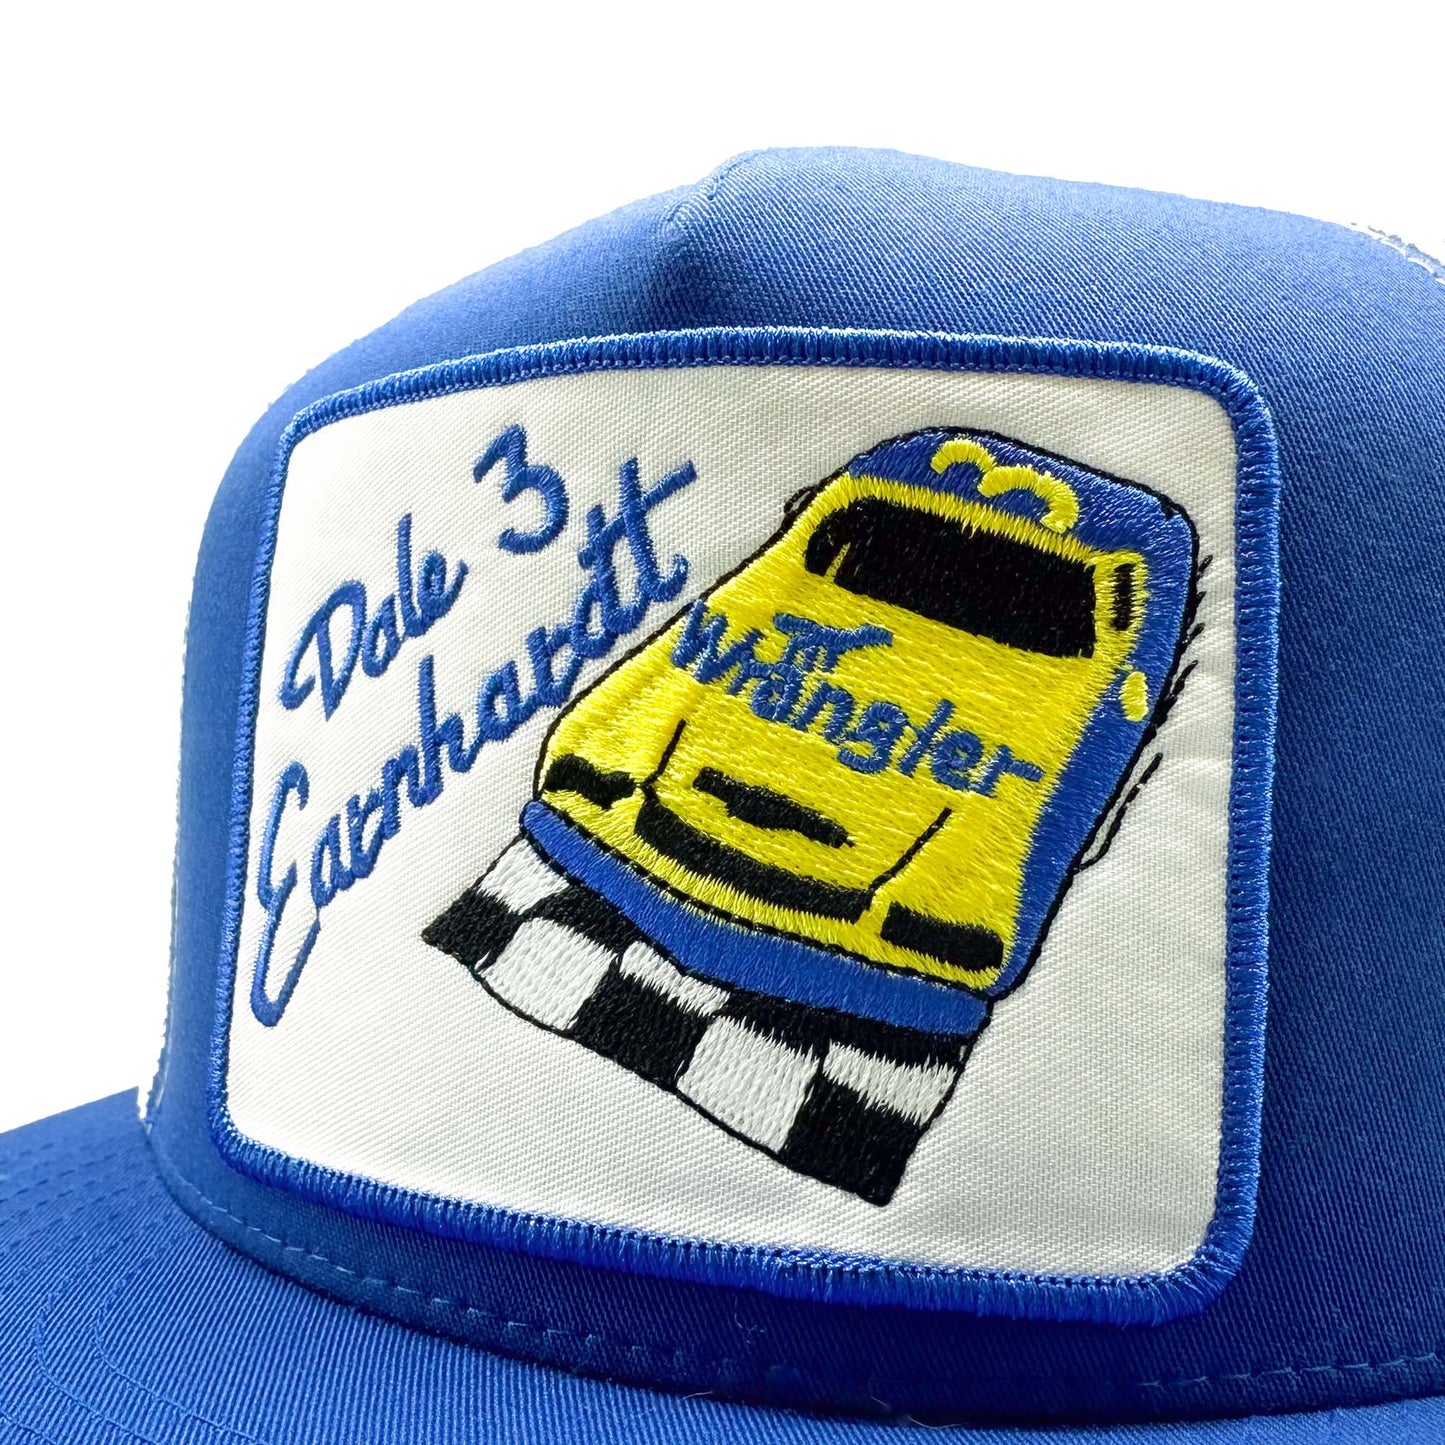 Dale Earnhardt Wrangler Racing Trucker Hat